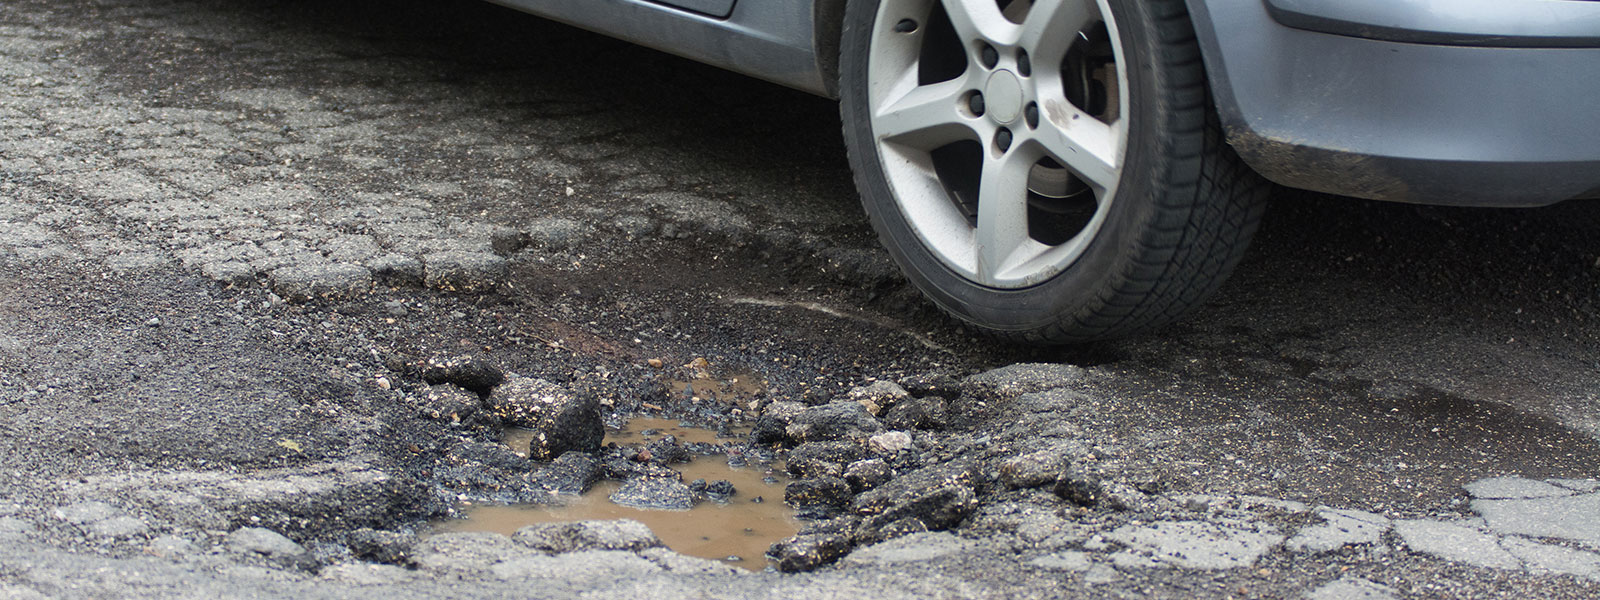 pothole-damage-blog-header-image